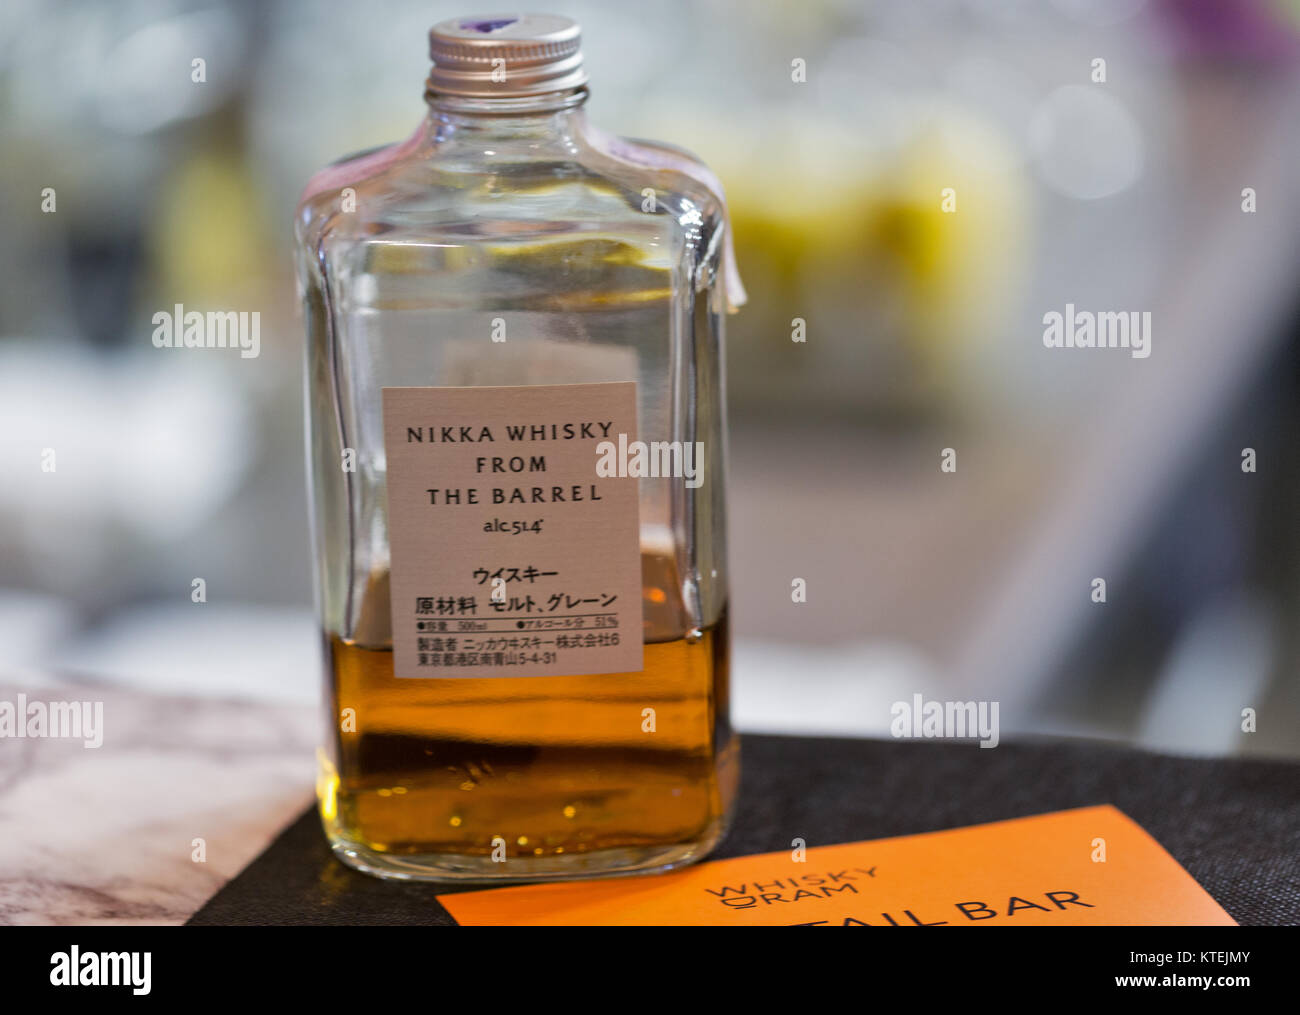 KIEV, UKRAINE - NOVEMBER 25, 2017: Nikka Whisky from the Barrel Japanese distillery bottle closeup on booth at 3rd Ukrainian Whisky Dram Festival in P Stock Photo